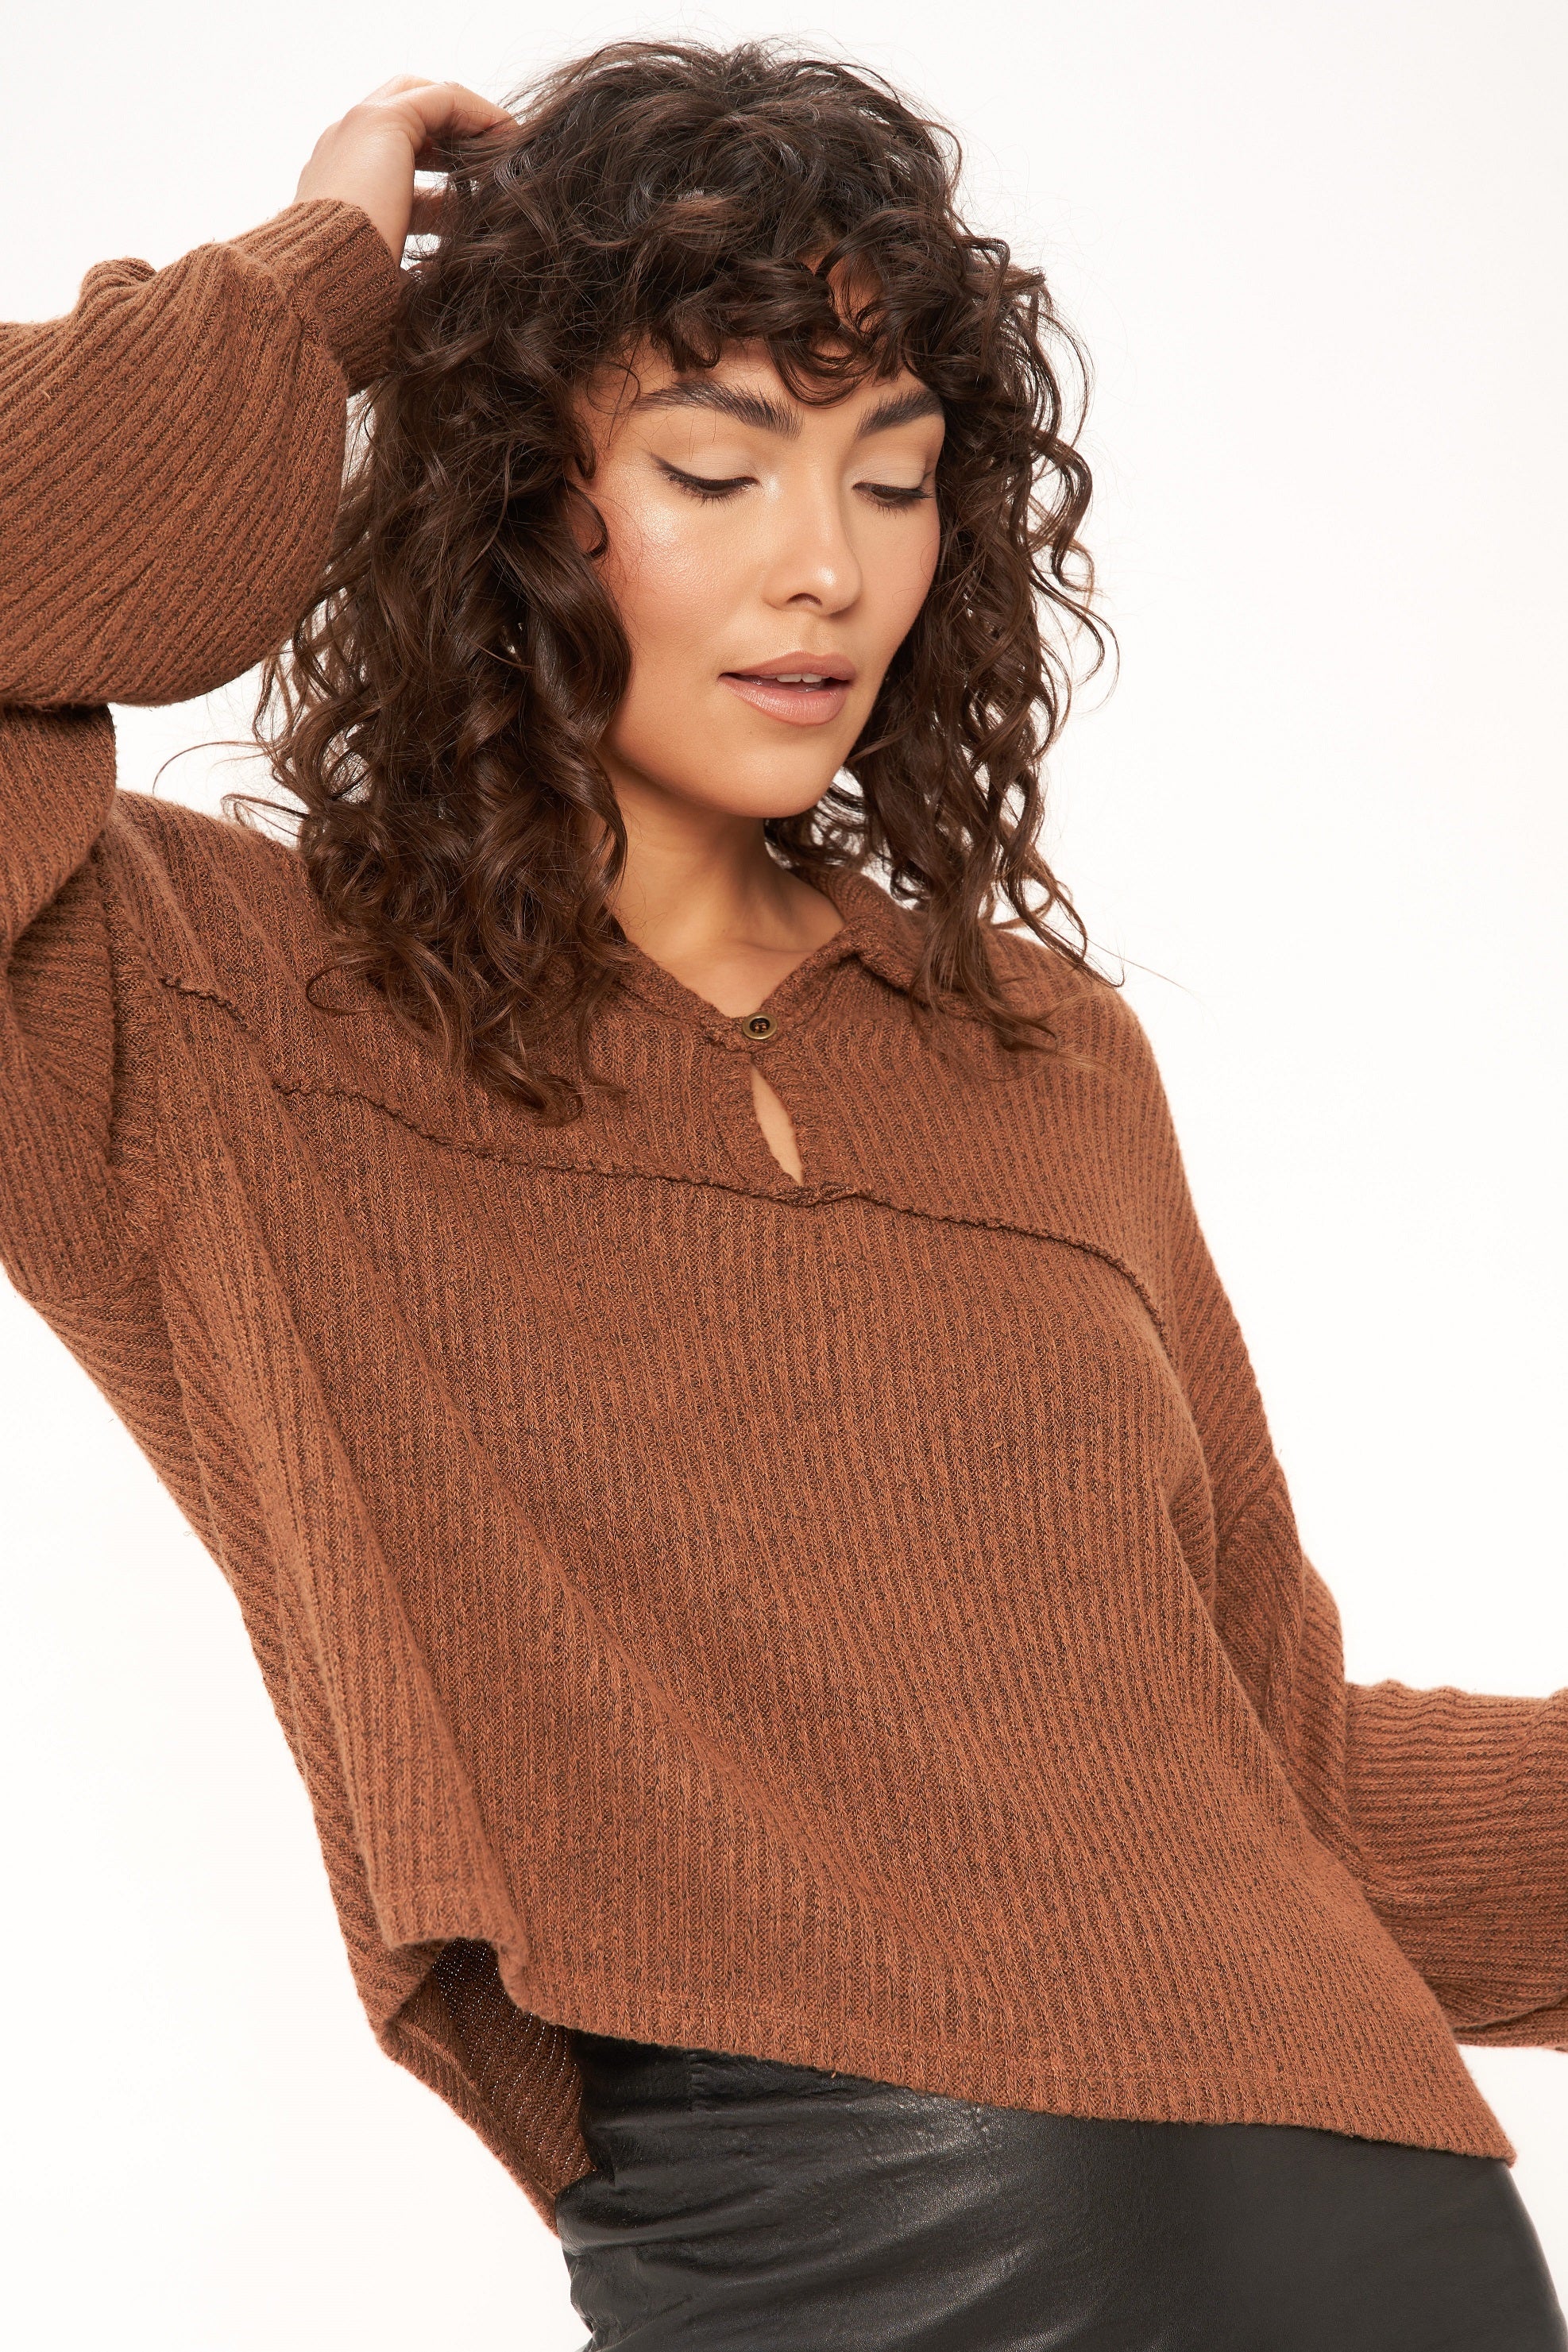 Brooklyn Collared Sweater